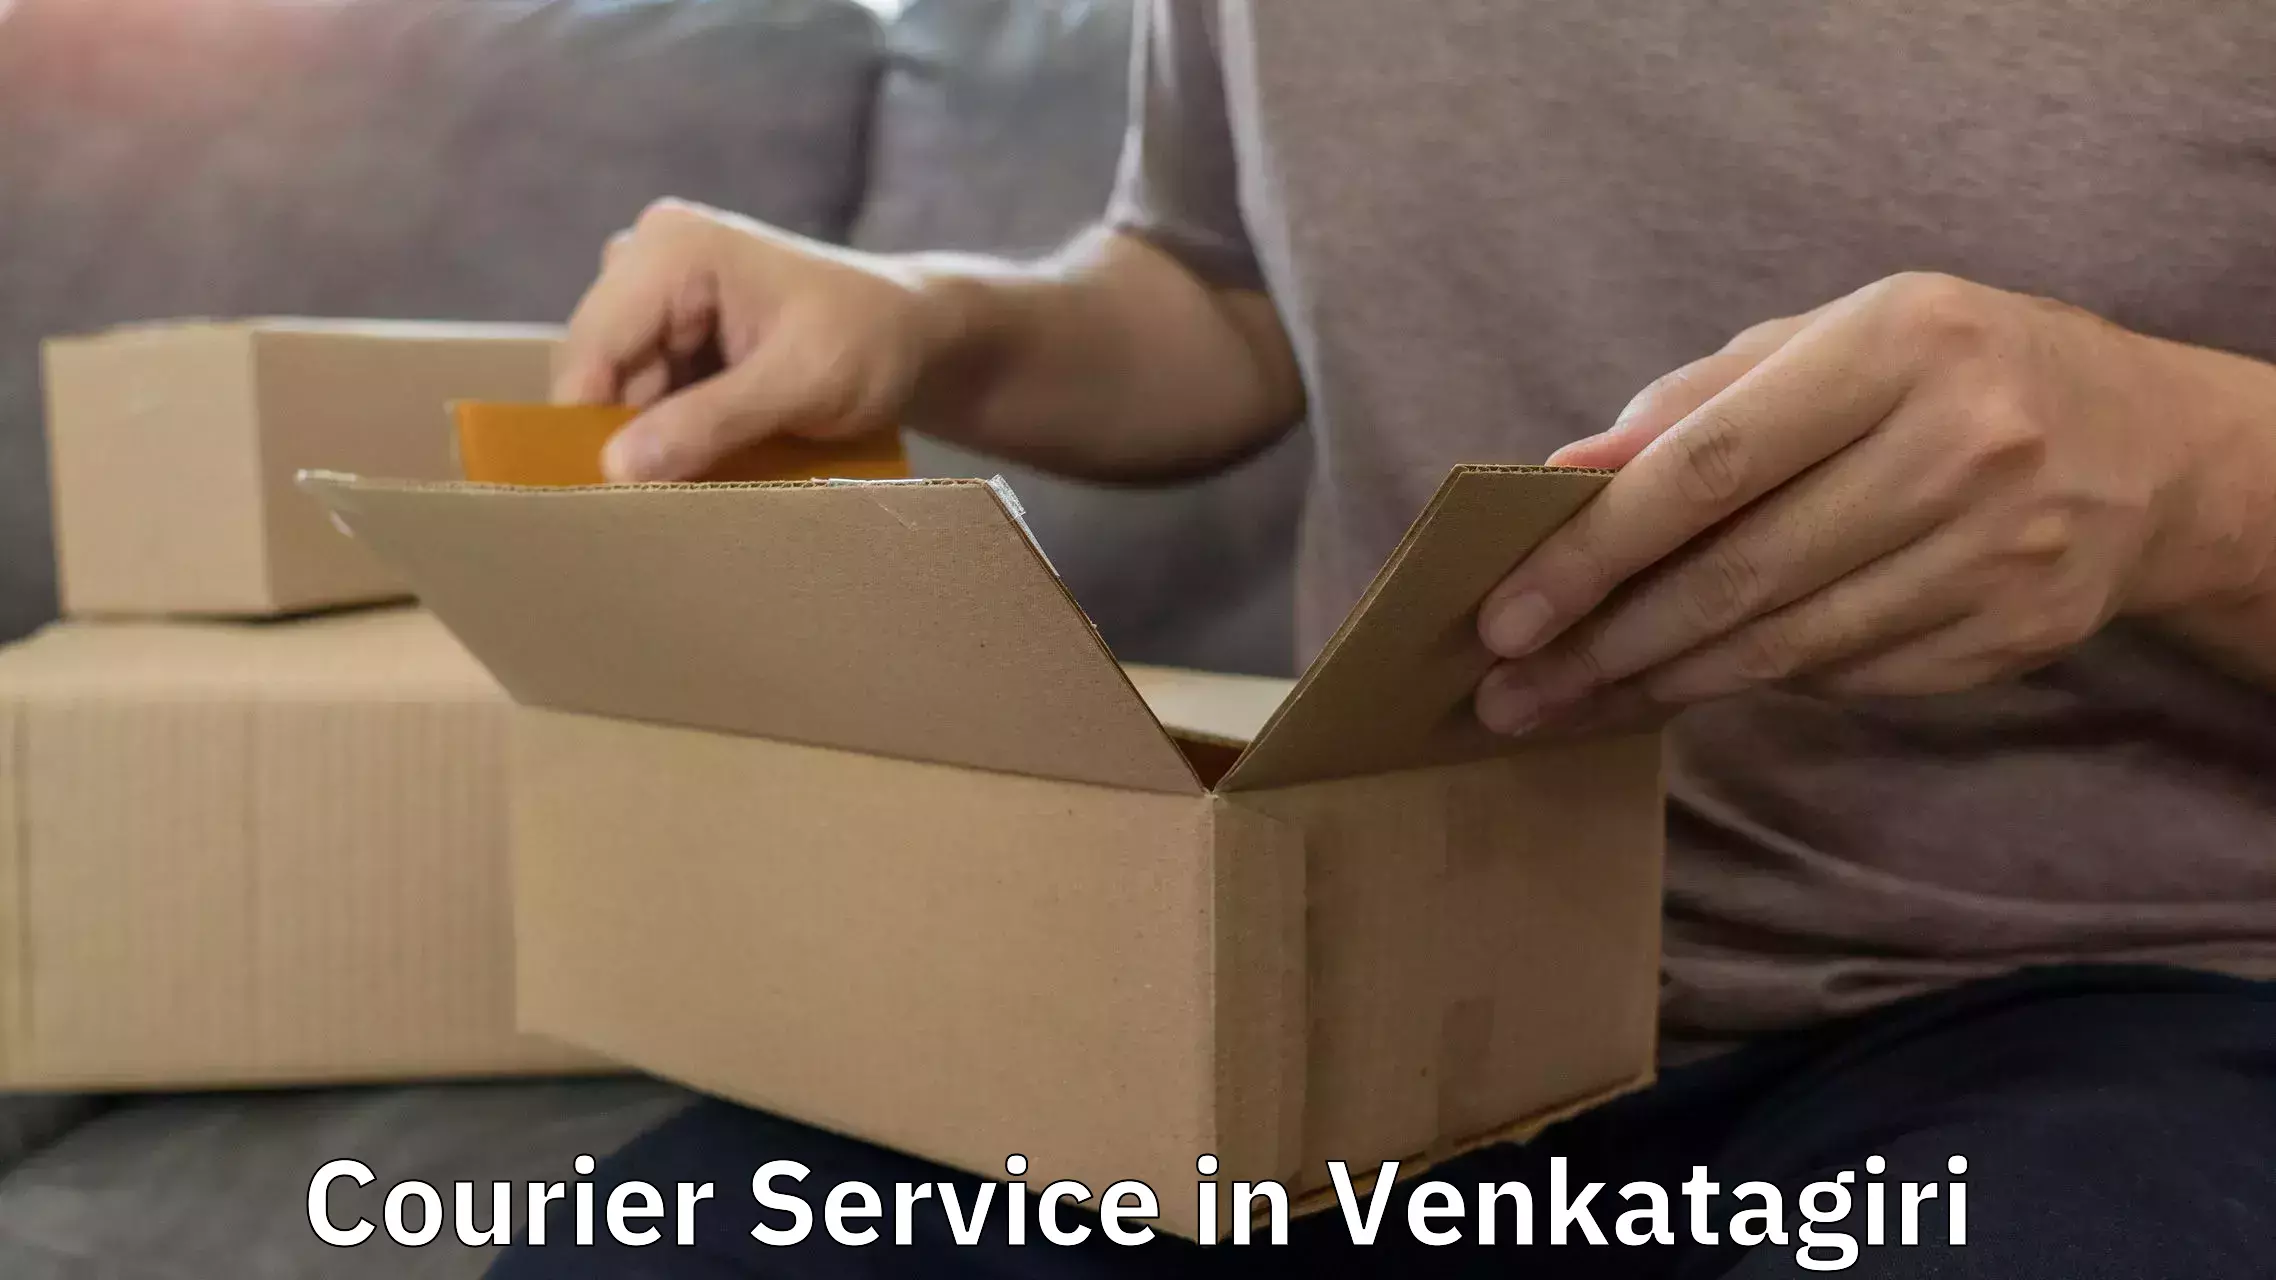 Express package handling in Venkatagiri